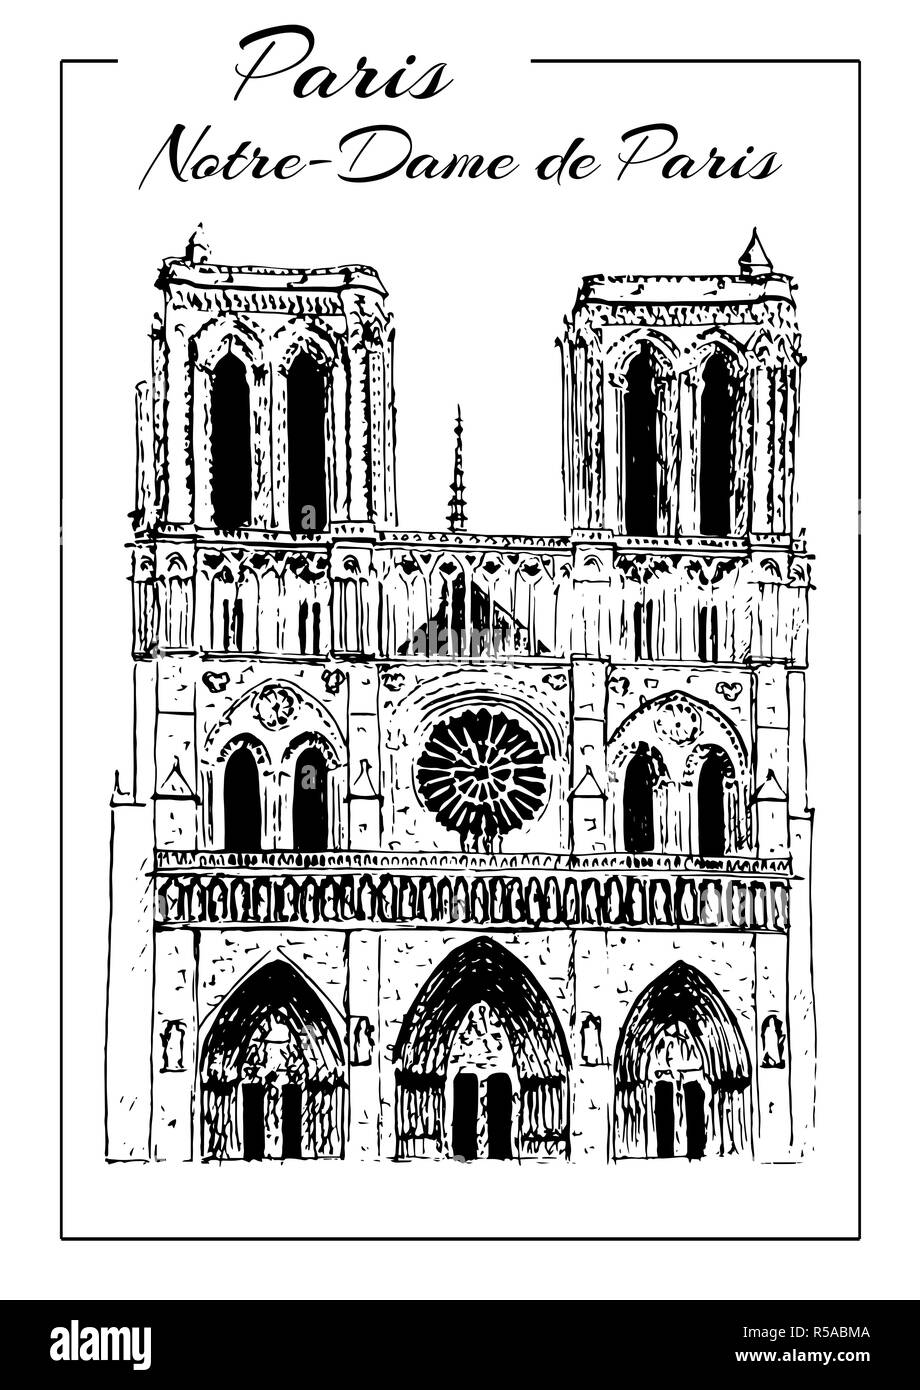 Cattedrale di Notre Dame de Paris, Francia. Schizzo di disegno manuale Foto Stock